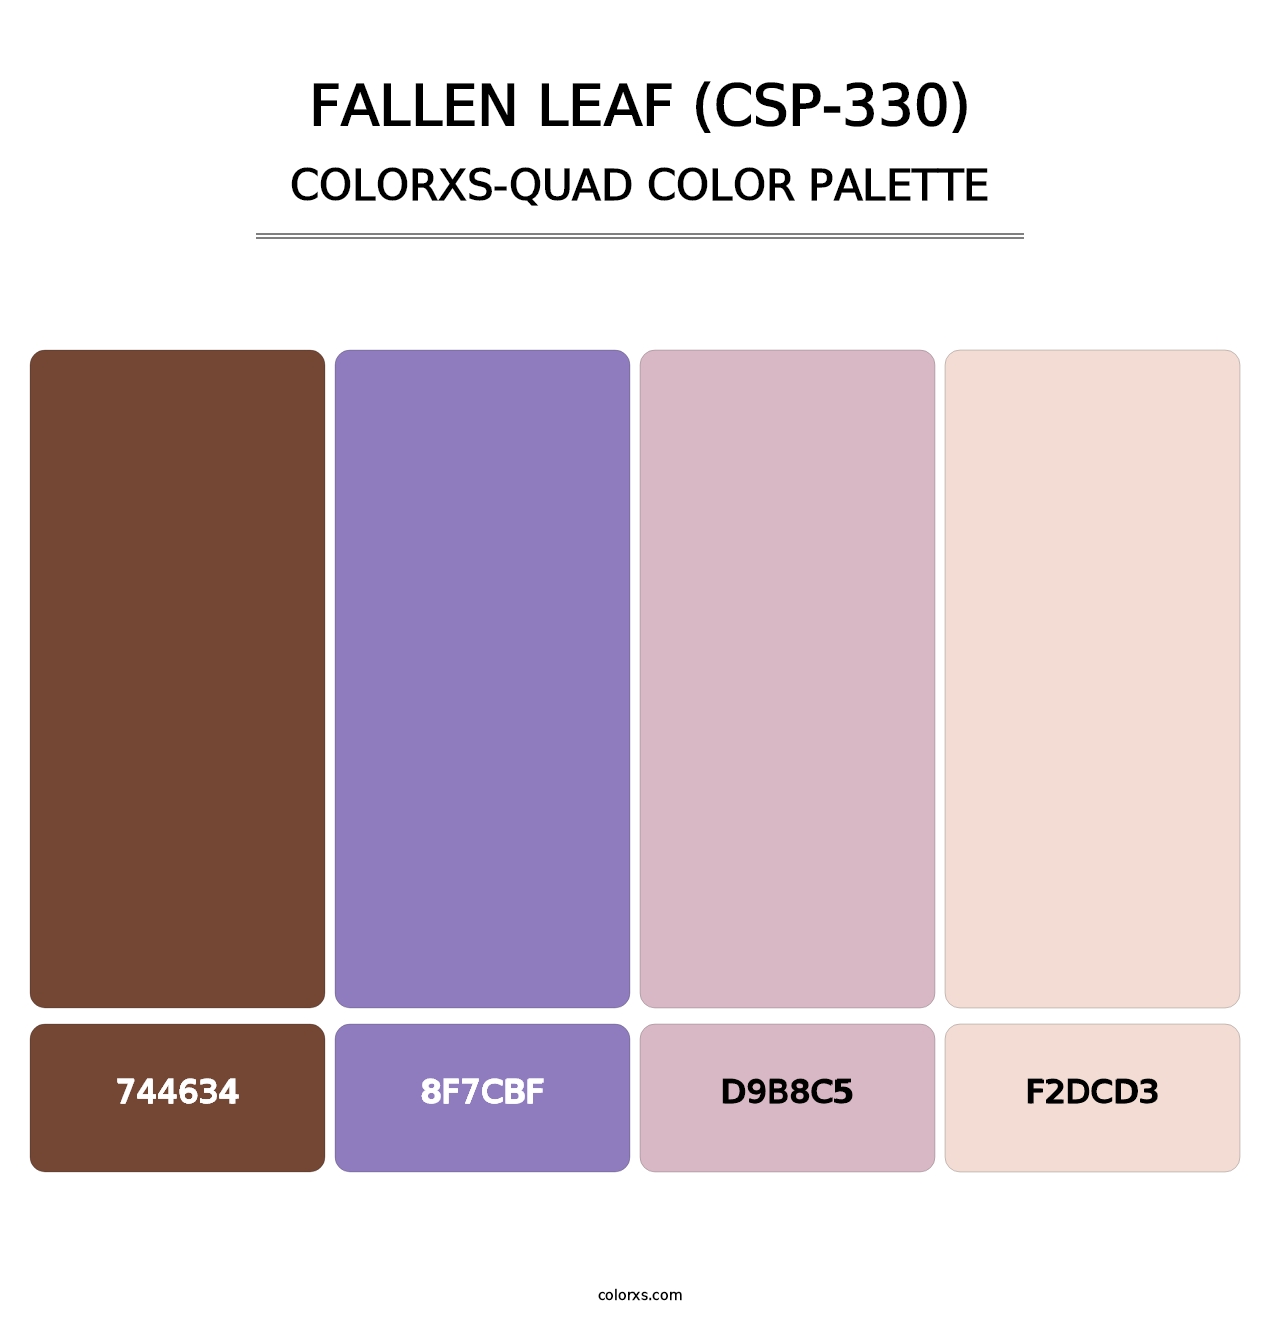 Fallen Leaf (CSP-330) - Colorxs Quad Palette